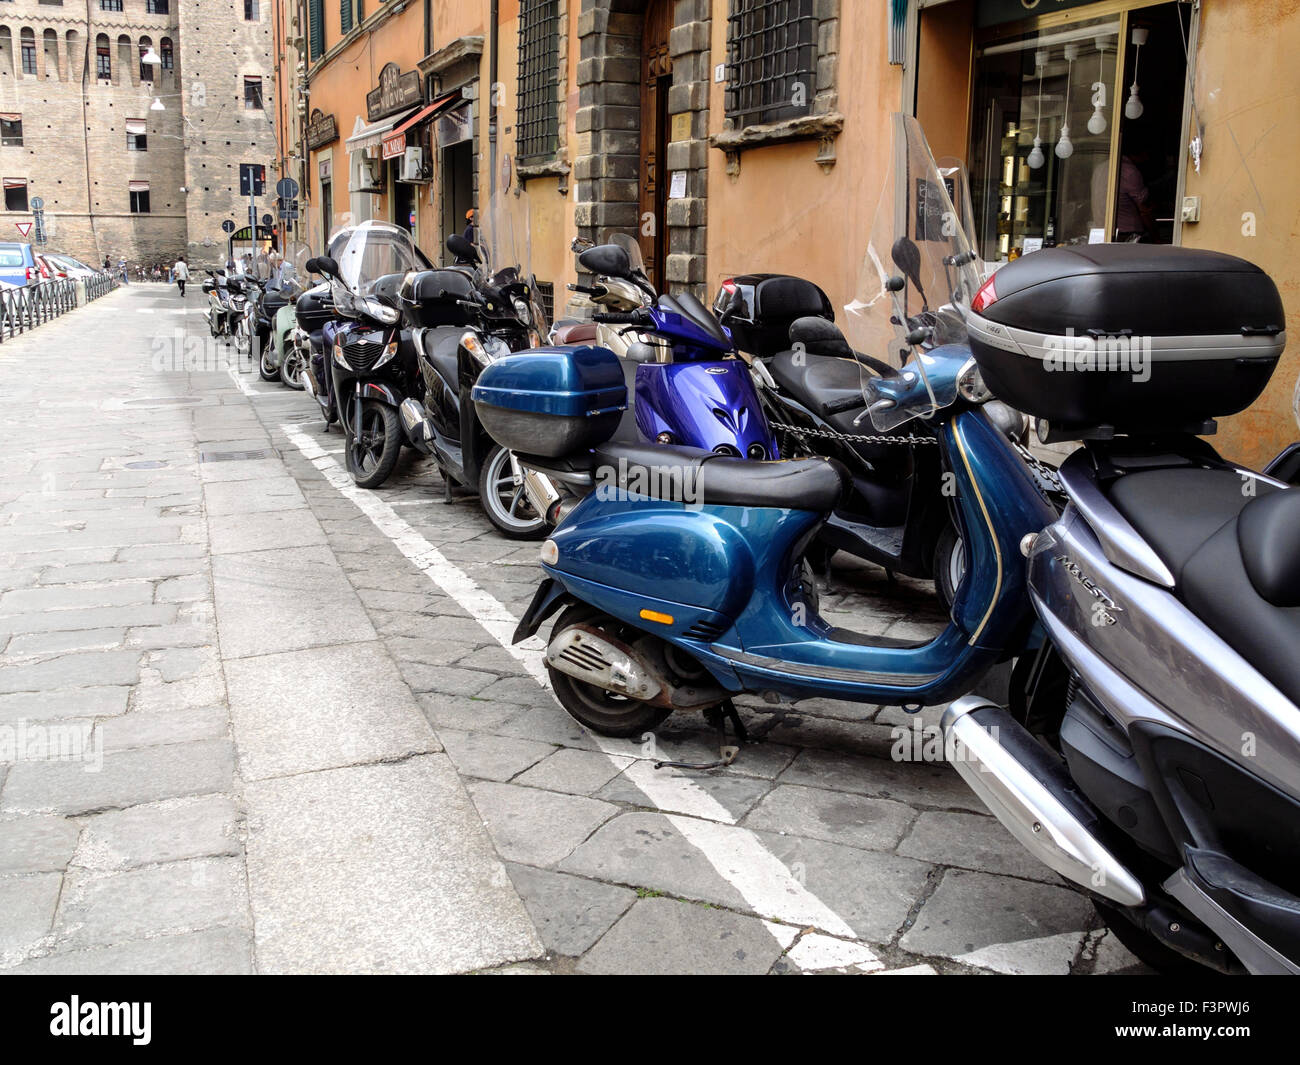 Italy, Emilia-Romagna region, Bologna - parked velos, motor scooters. Stock Photo